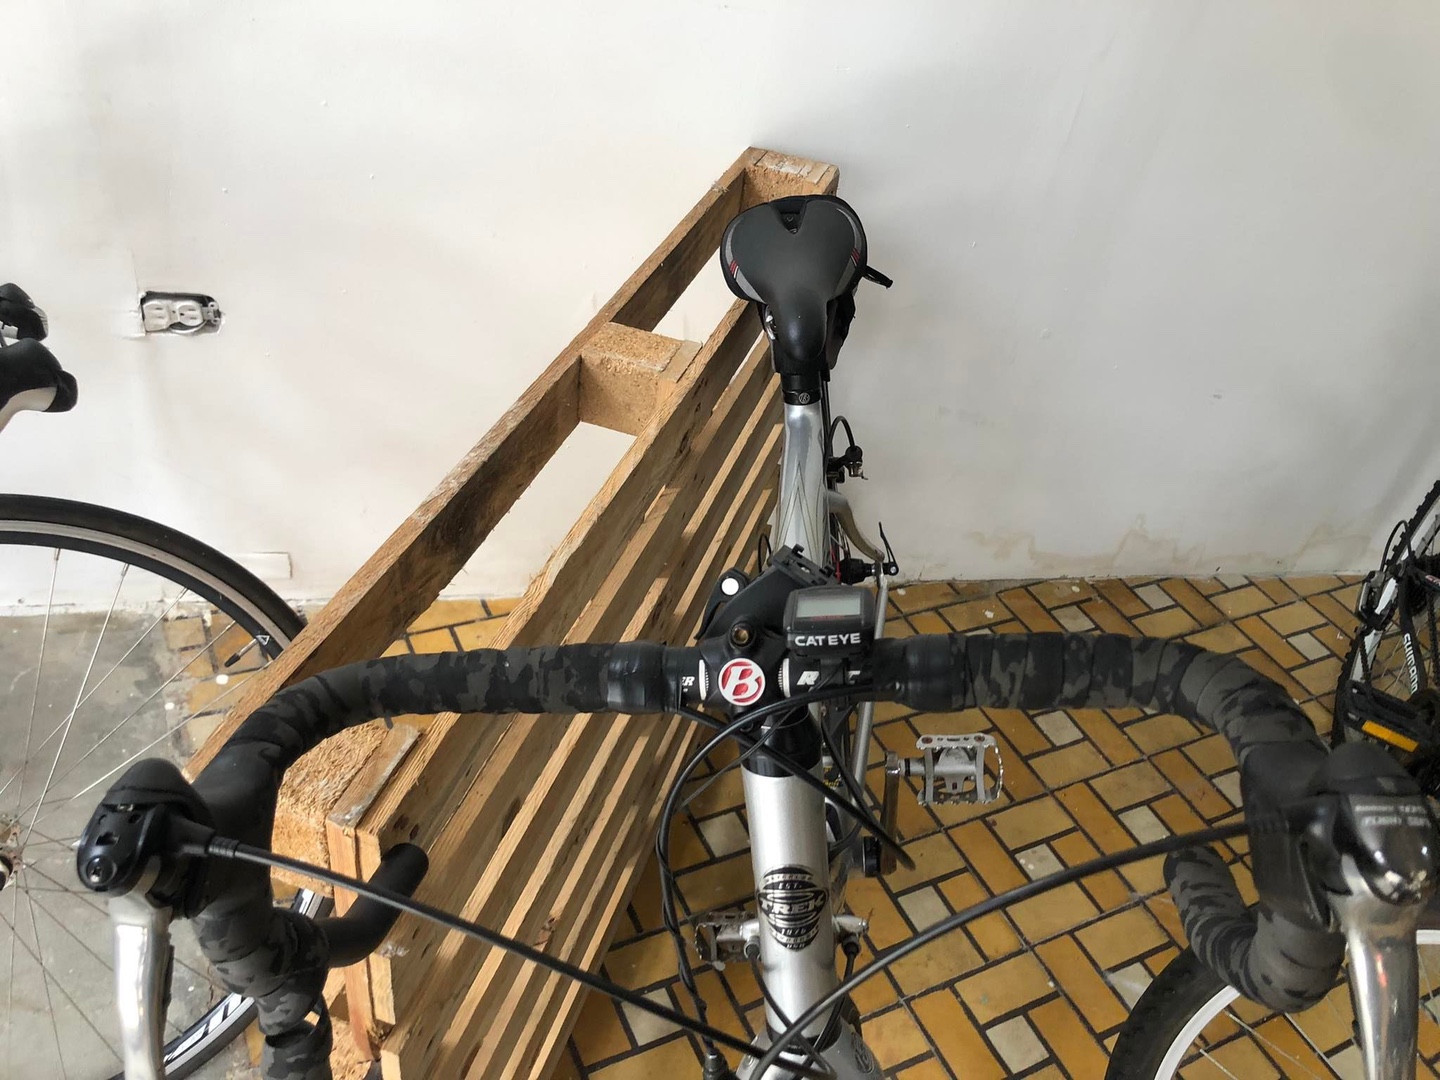 bicicletas y accesorios - Bicicleta TREk carbono